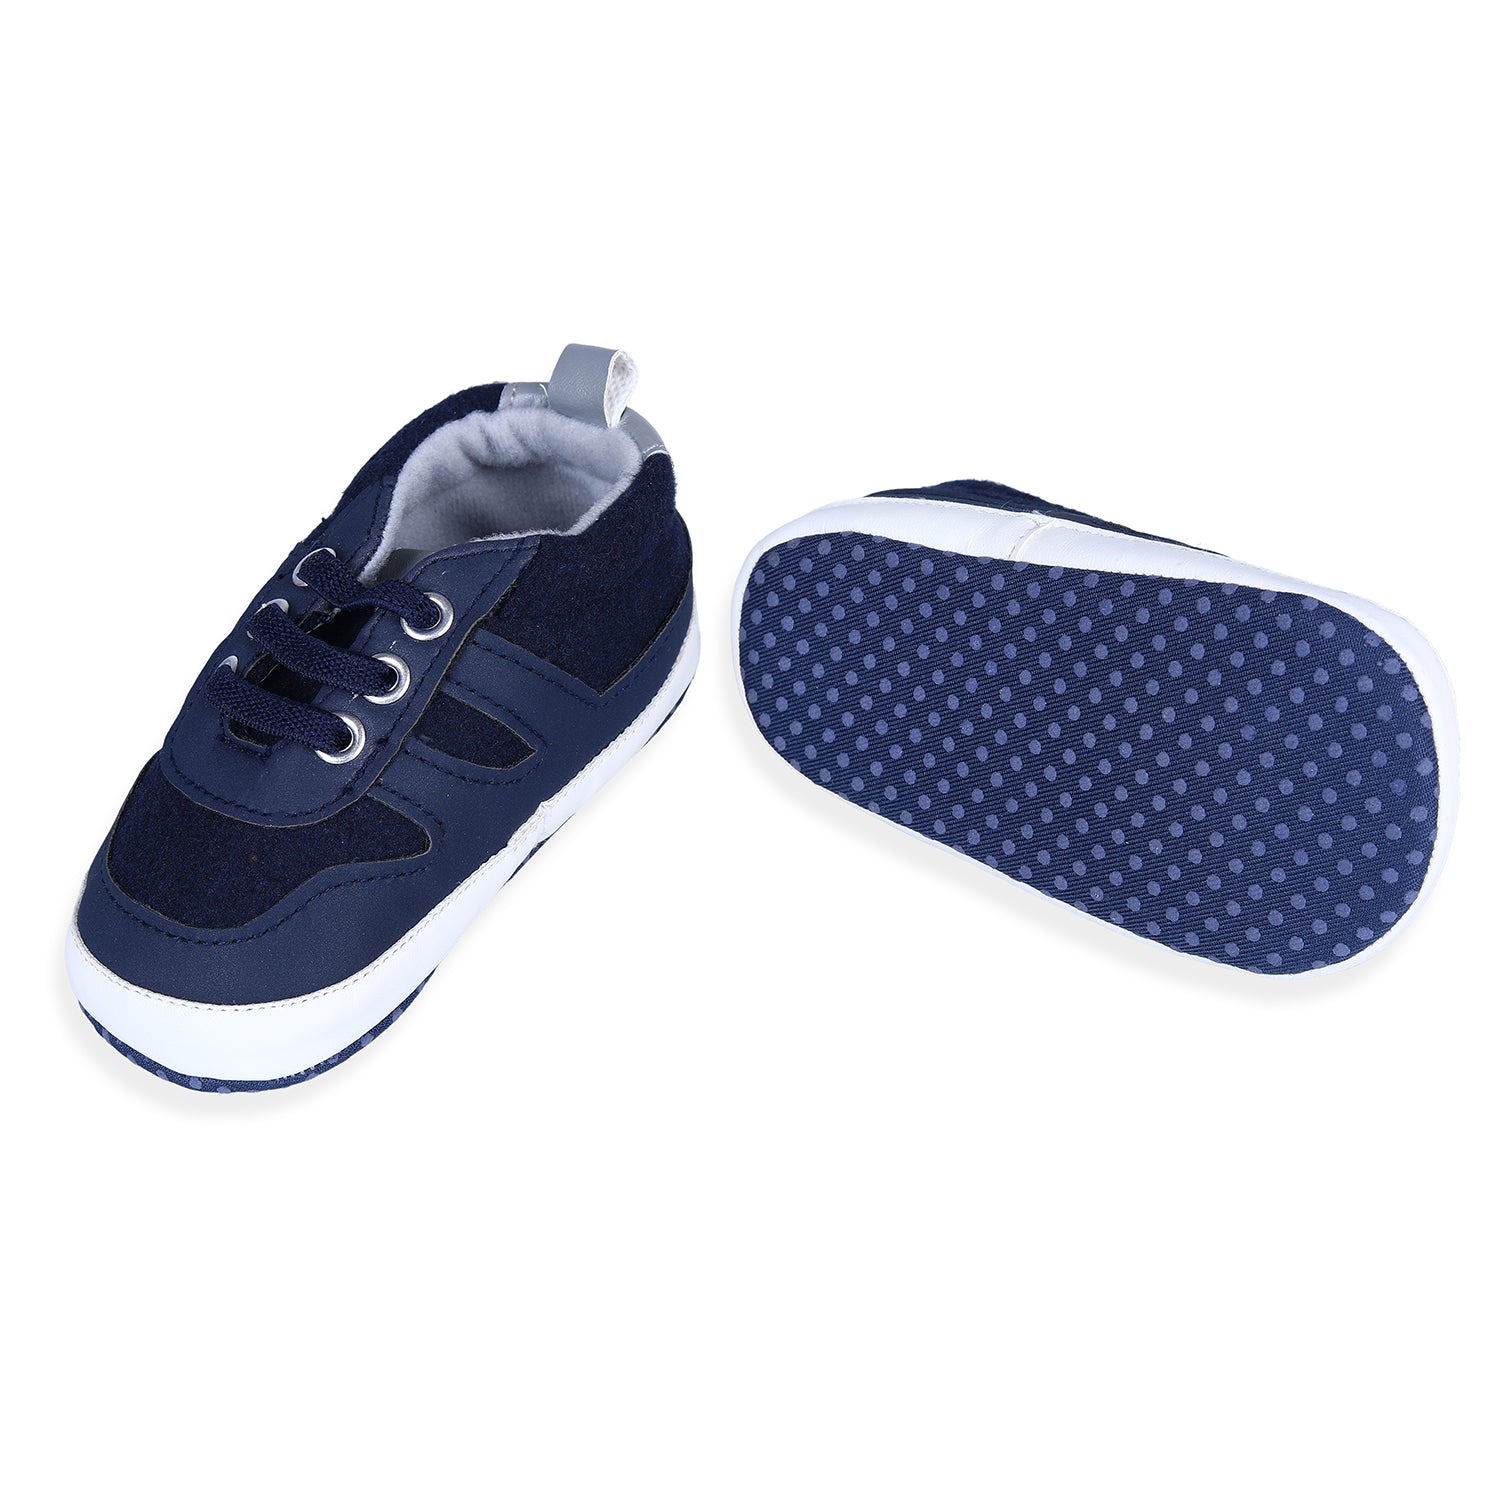 Buy Men Blue Casual Sneakers Online | Walkway Shoes